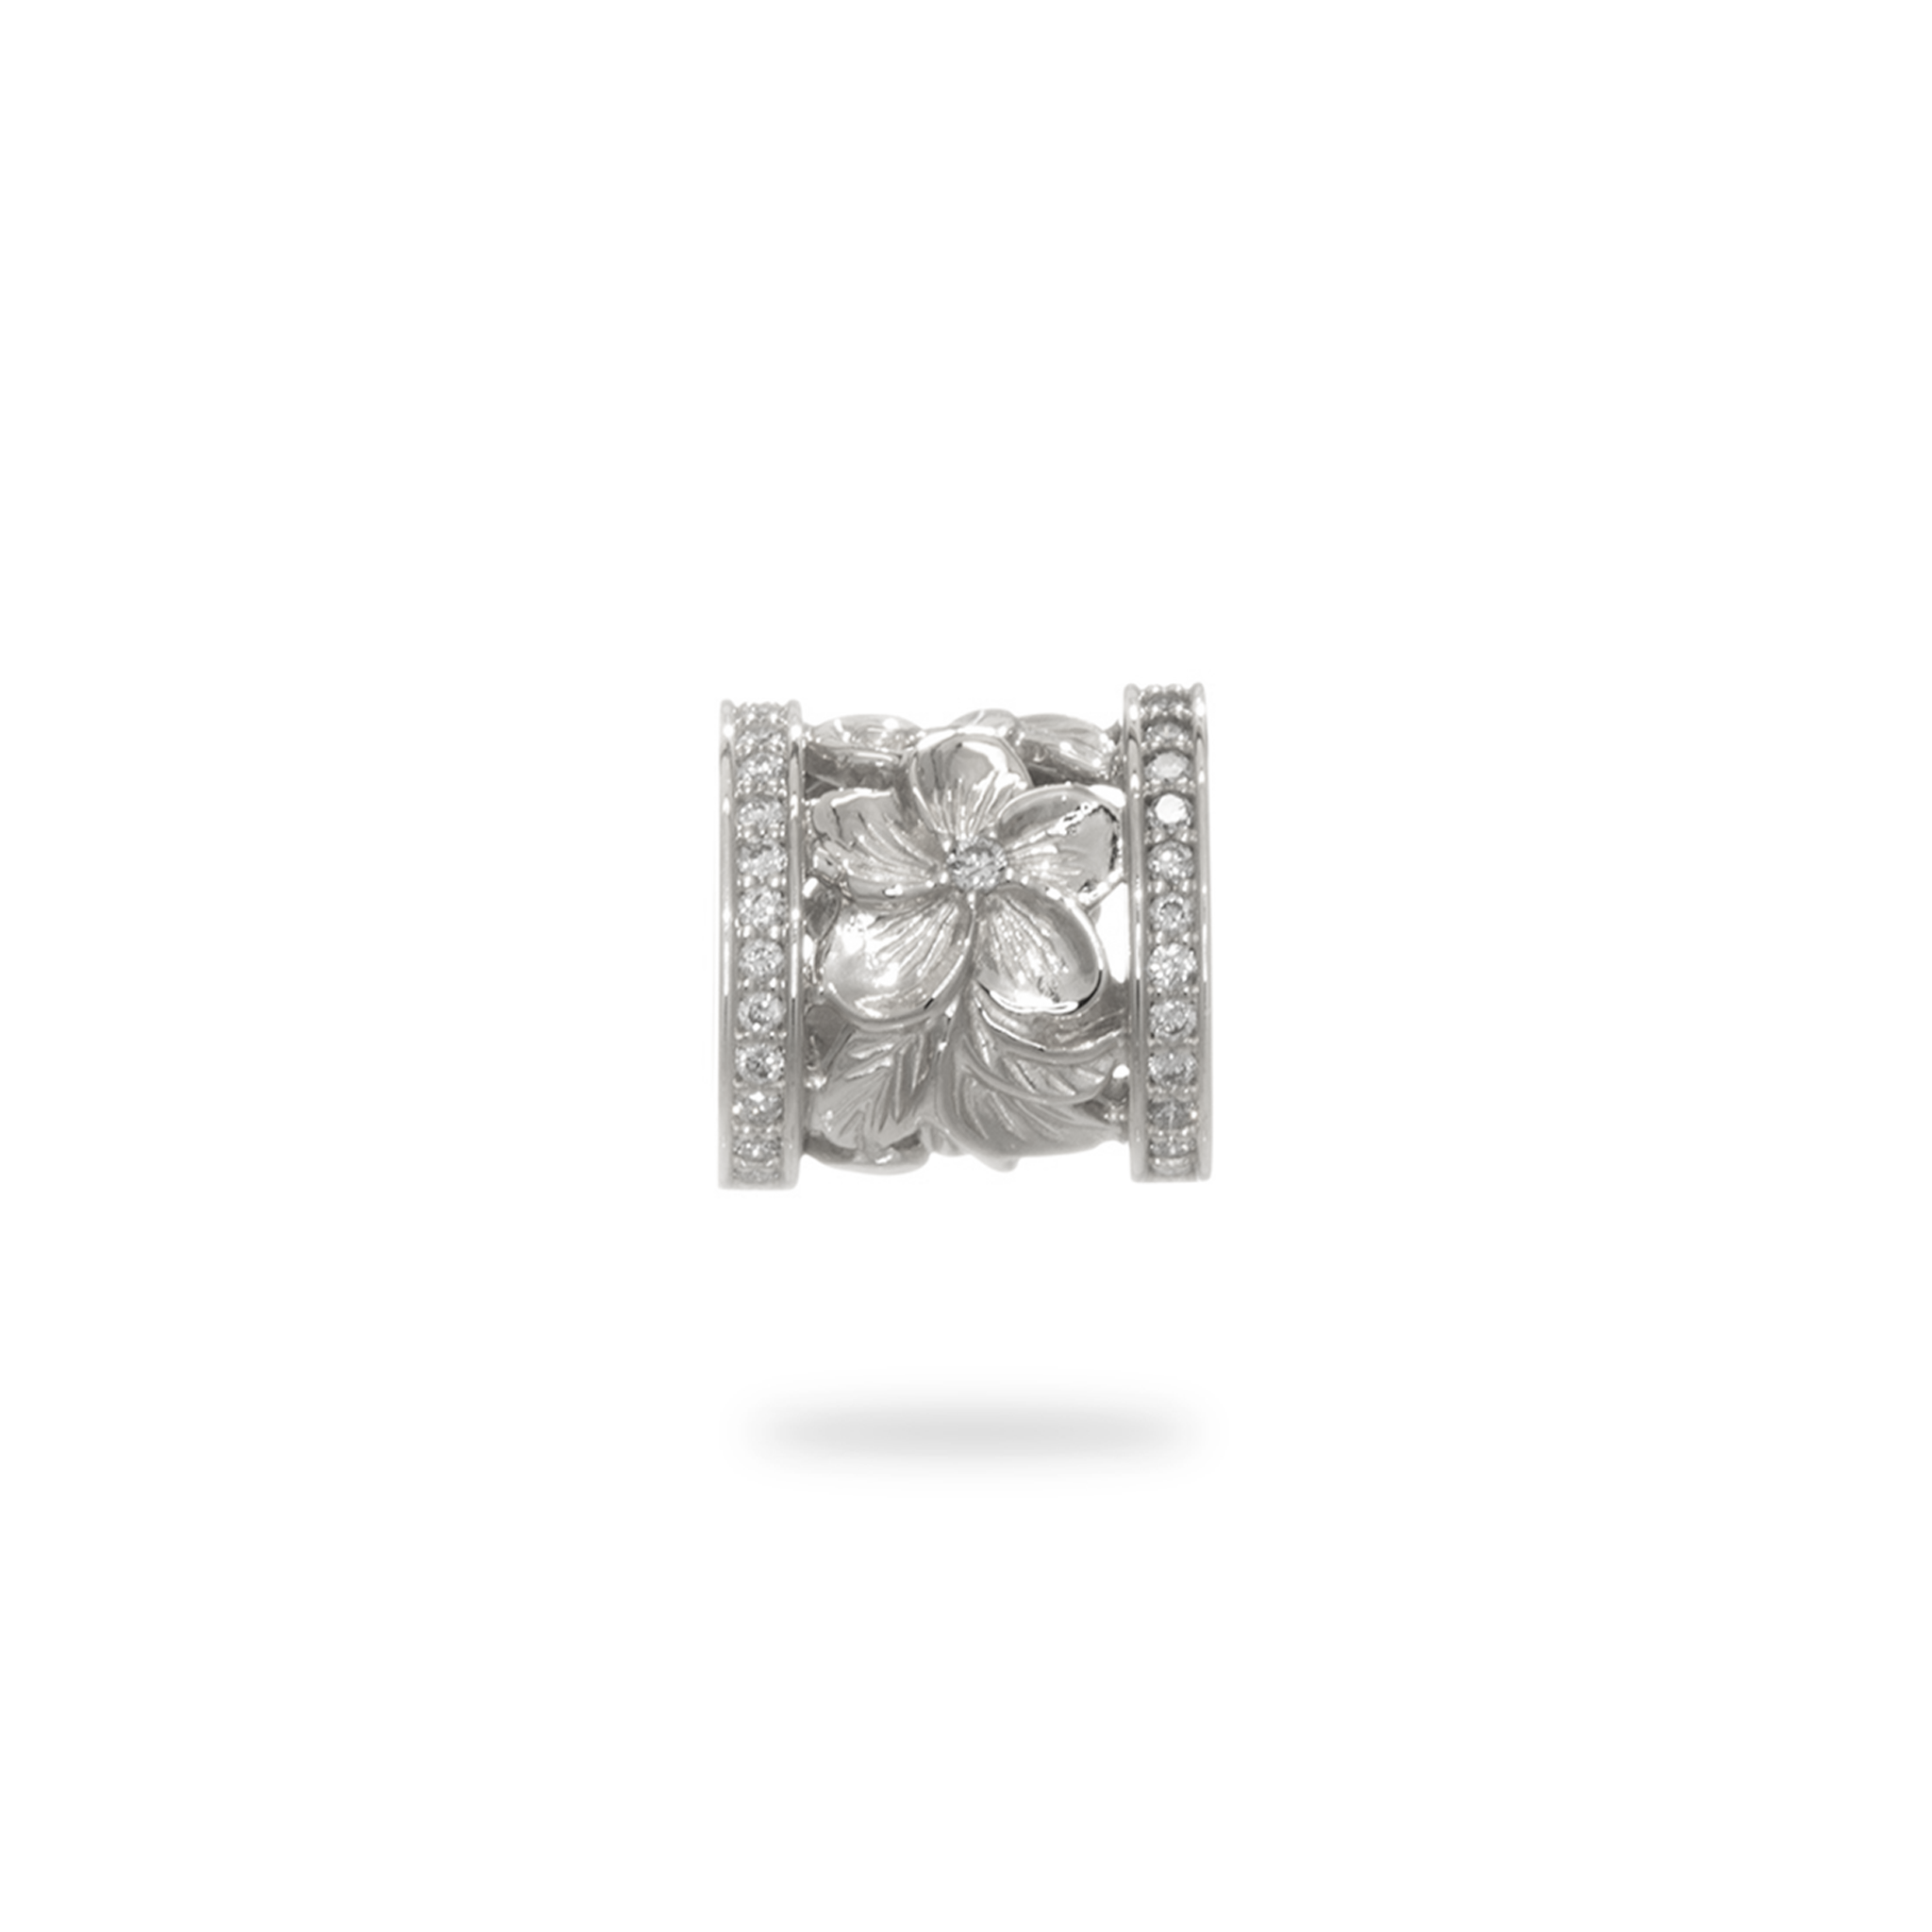 ハワイアン エアルーム プルメリア バレル ペンダント ホワイトゴールド ダイヤモンド付き - 12mm